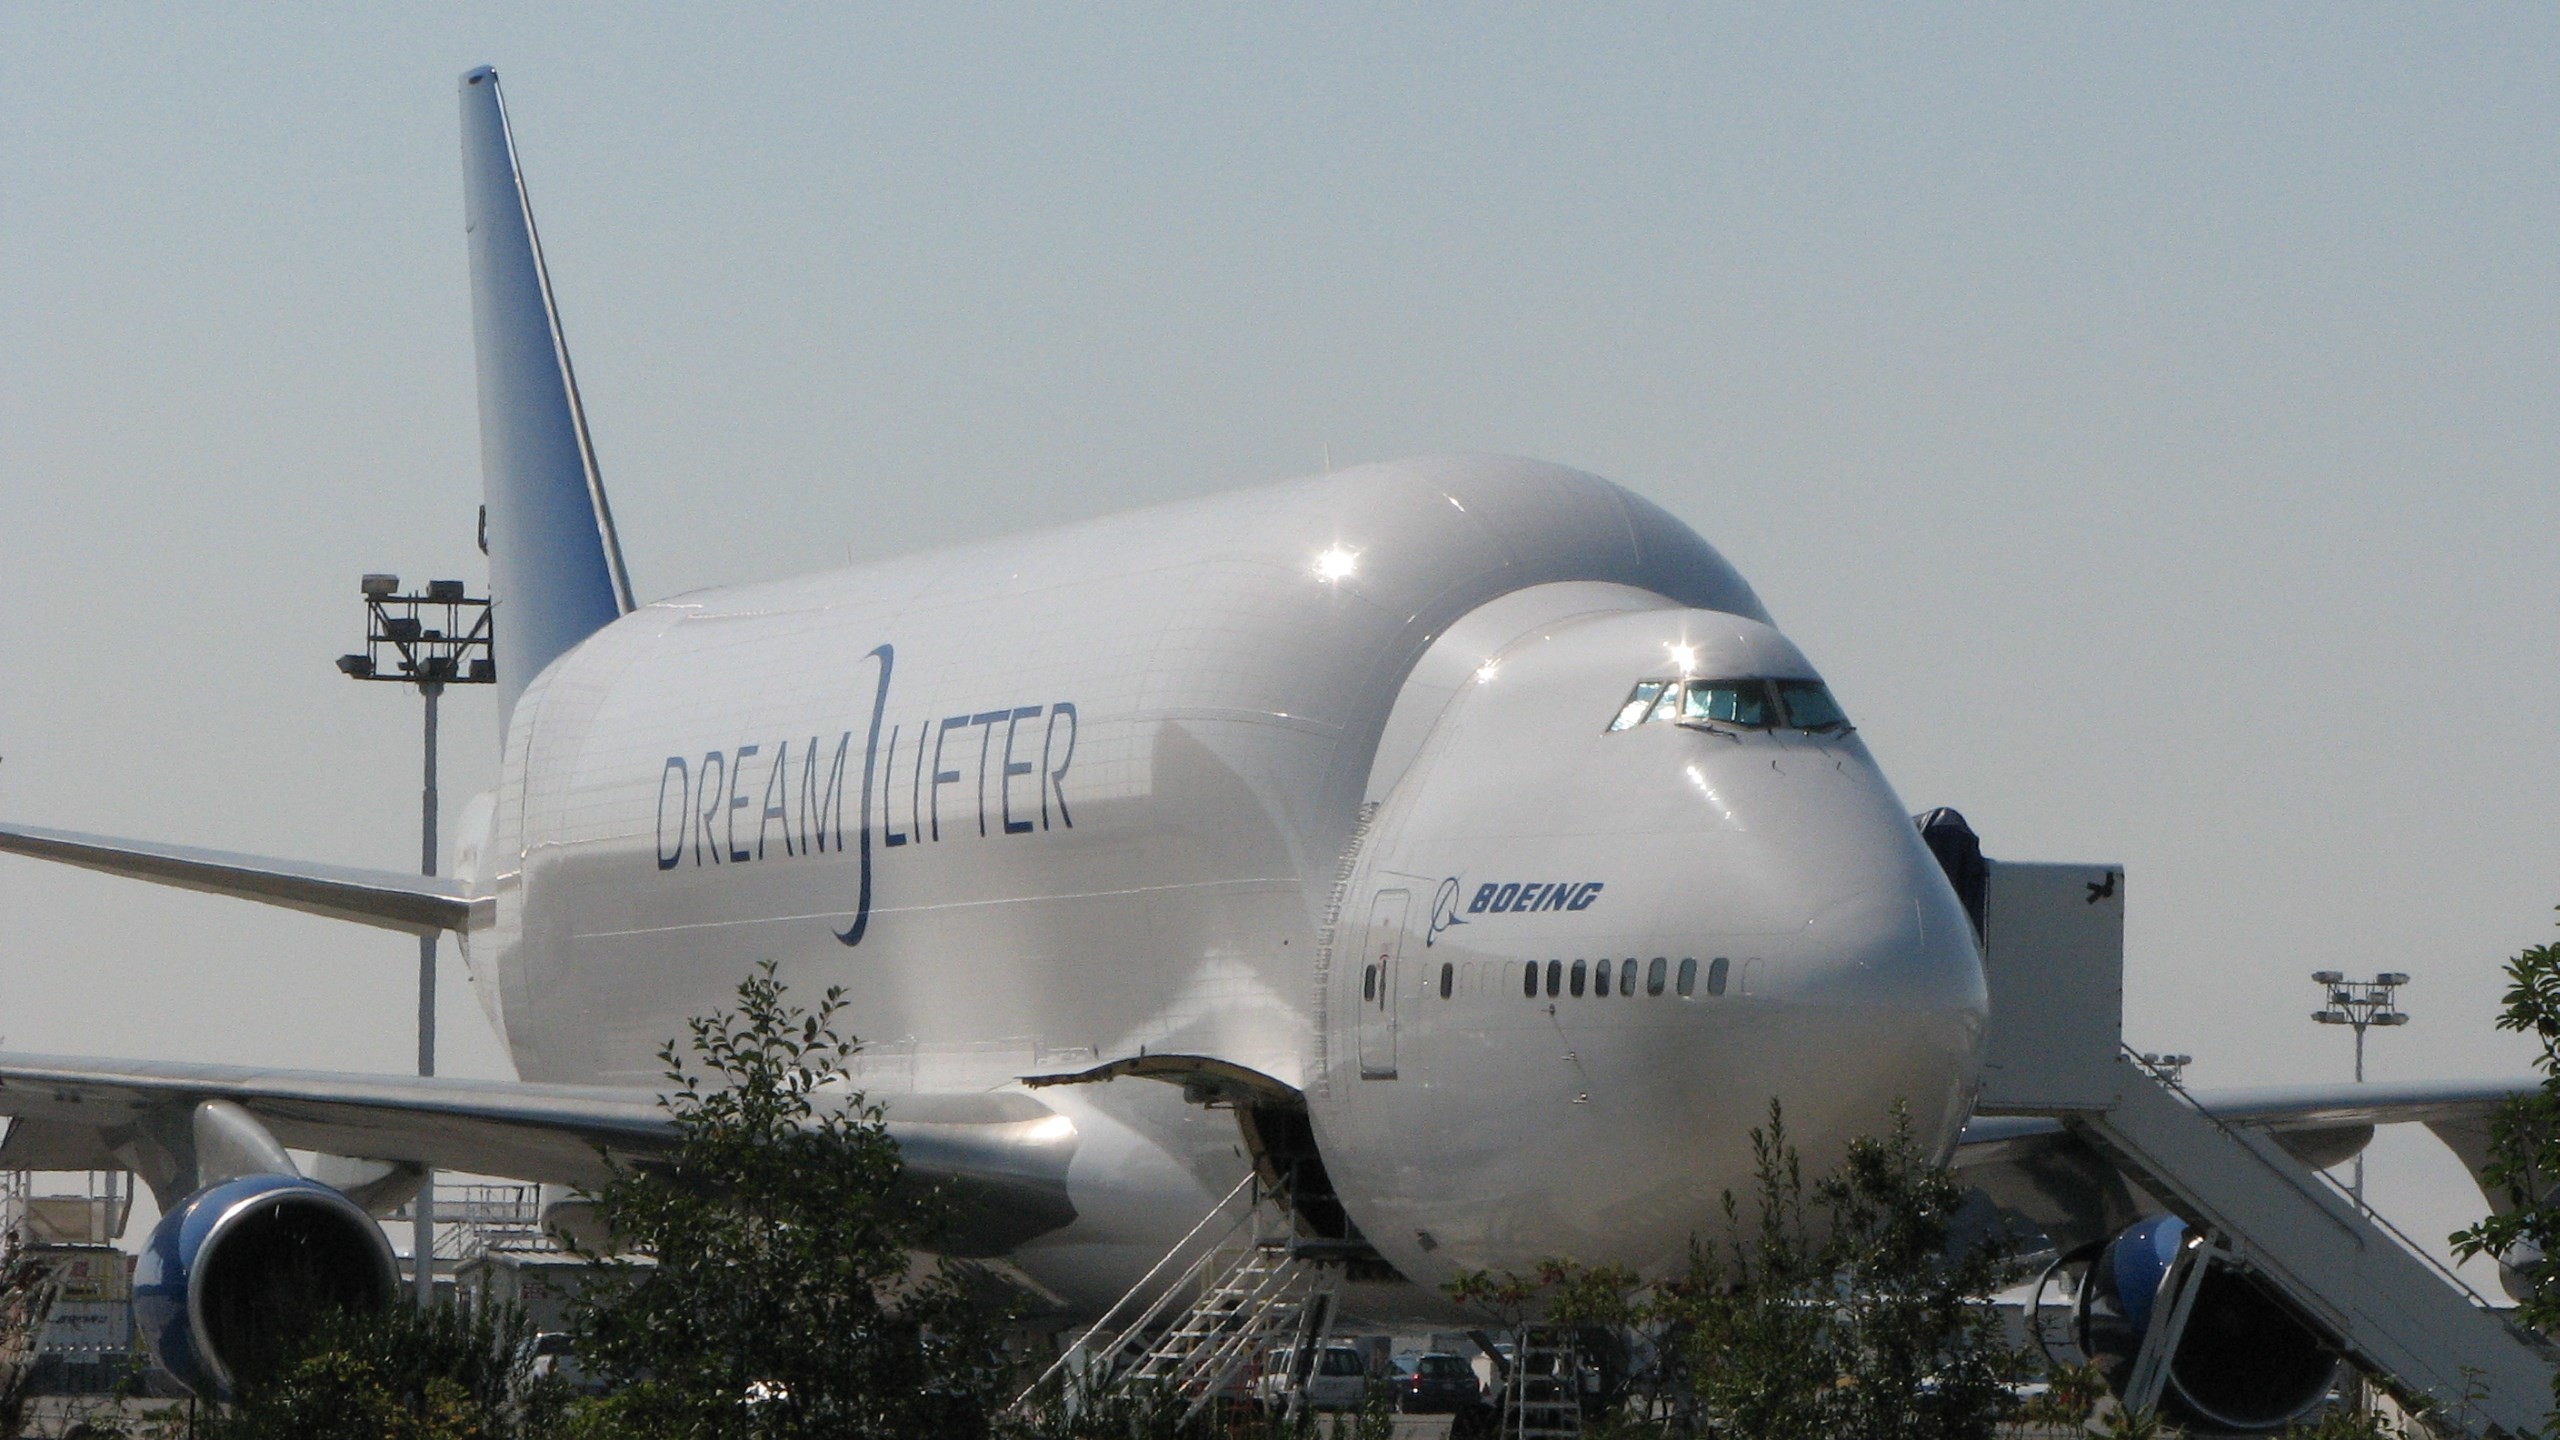 2560x1440 boeing 747 dreamlifter wallpaper hd pack - boeing 747 dreamlifter category